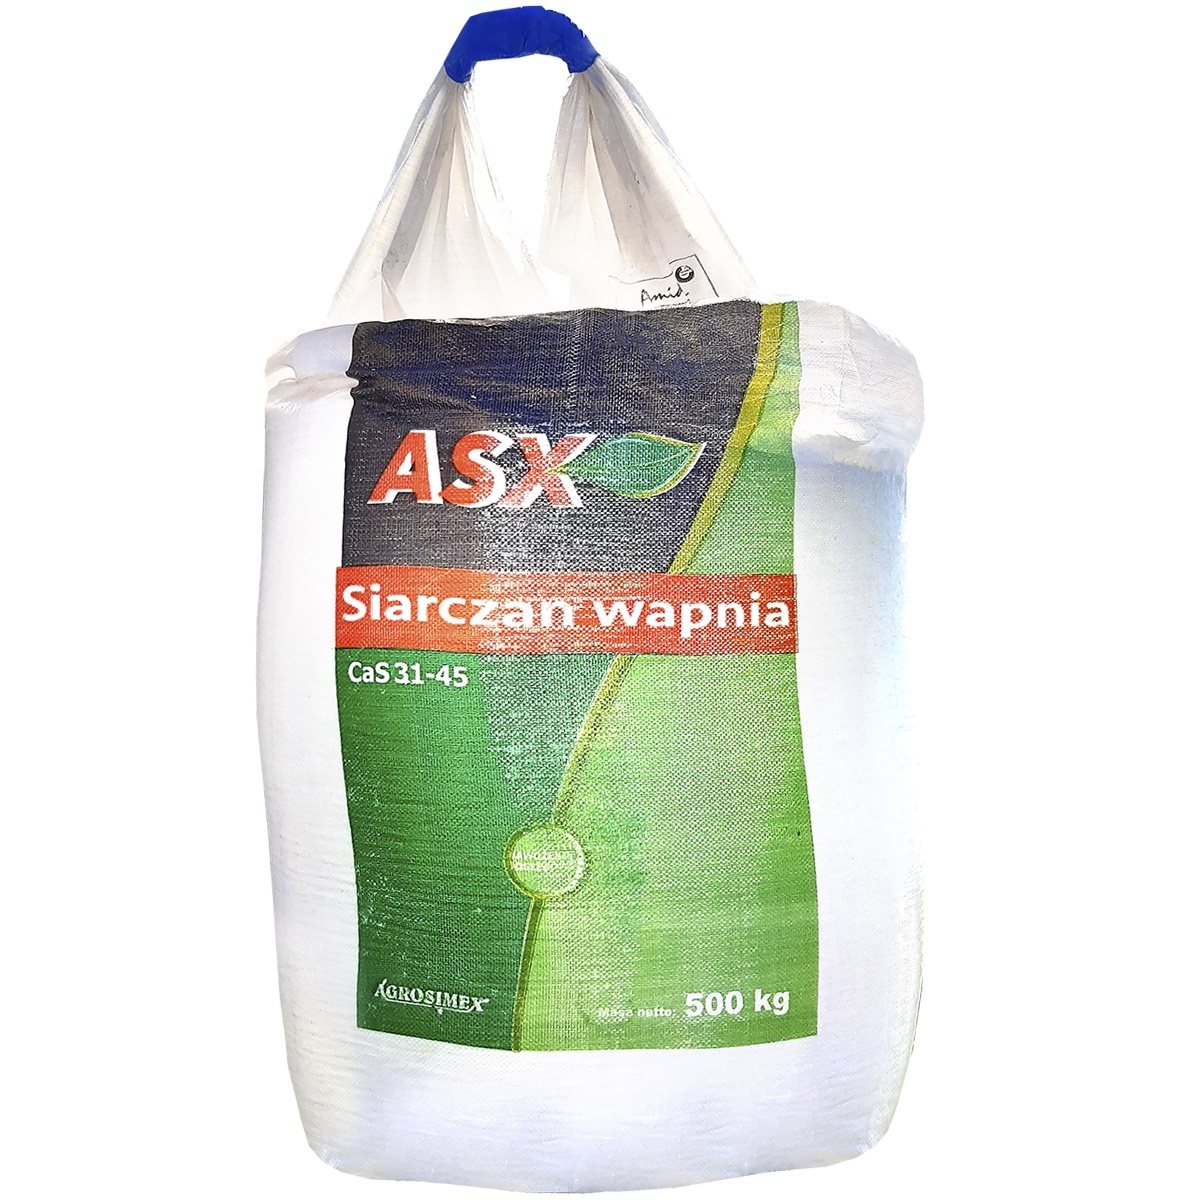 Siarczan wapnia Big Bag 500kg ASX - nawóz siarkowo-wapniowy